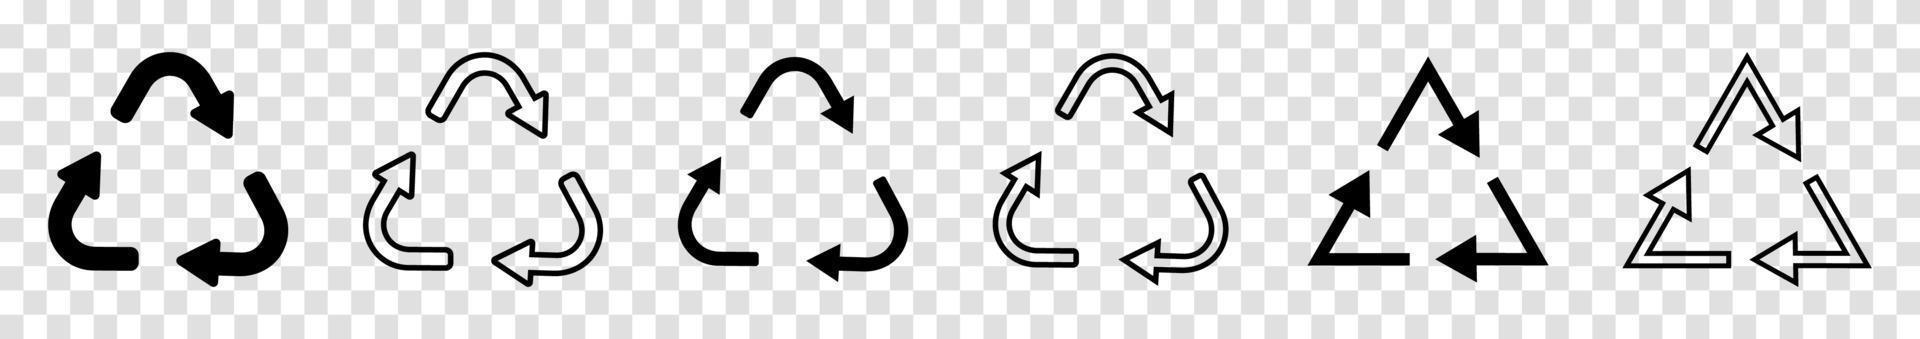 conjunto de iconos de reciclaje. icono de símbolo de reciclaje. reciclar iconos vectoriales negros en una fila. ilustración vectorial vector